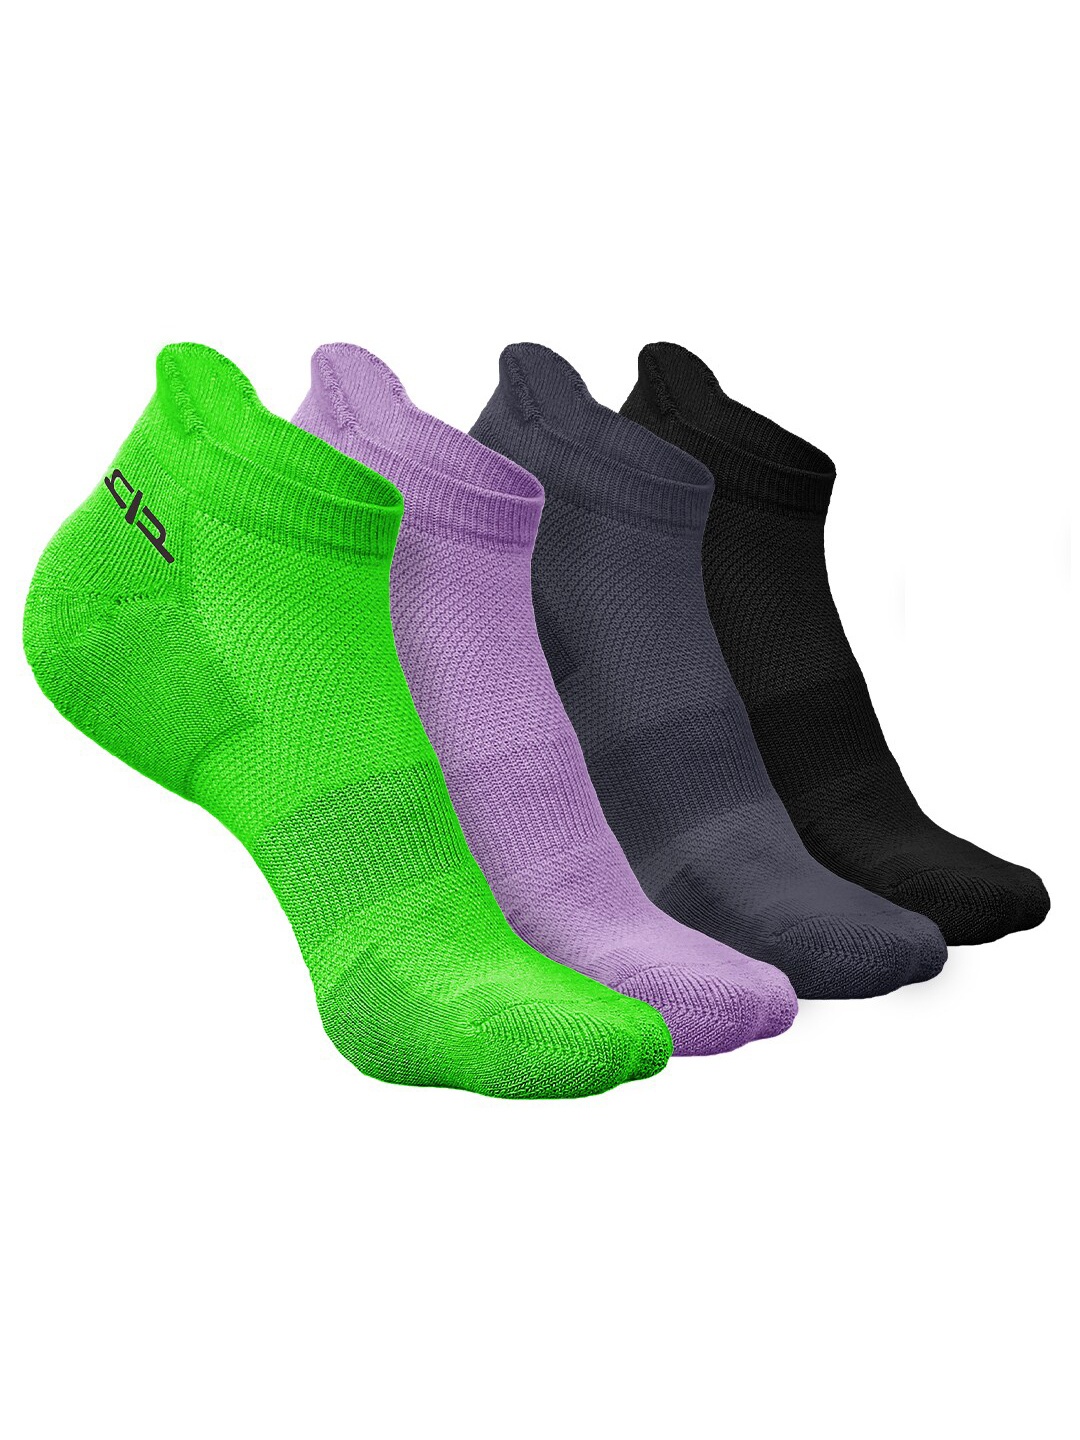 

Heelium Women Pack Of 4 Self-Design Odour-Free Breathable Ankle-Length Socks, Green